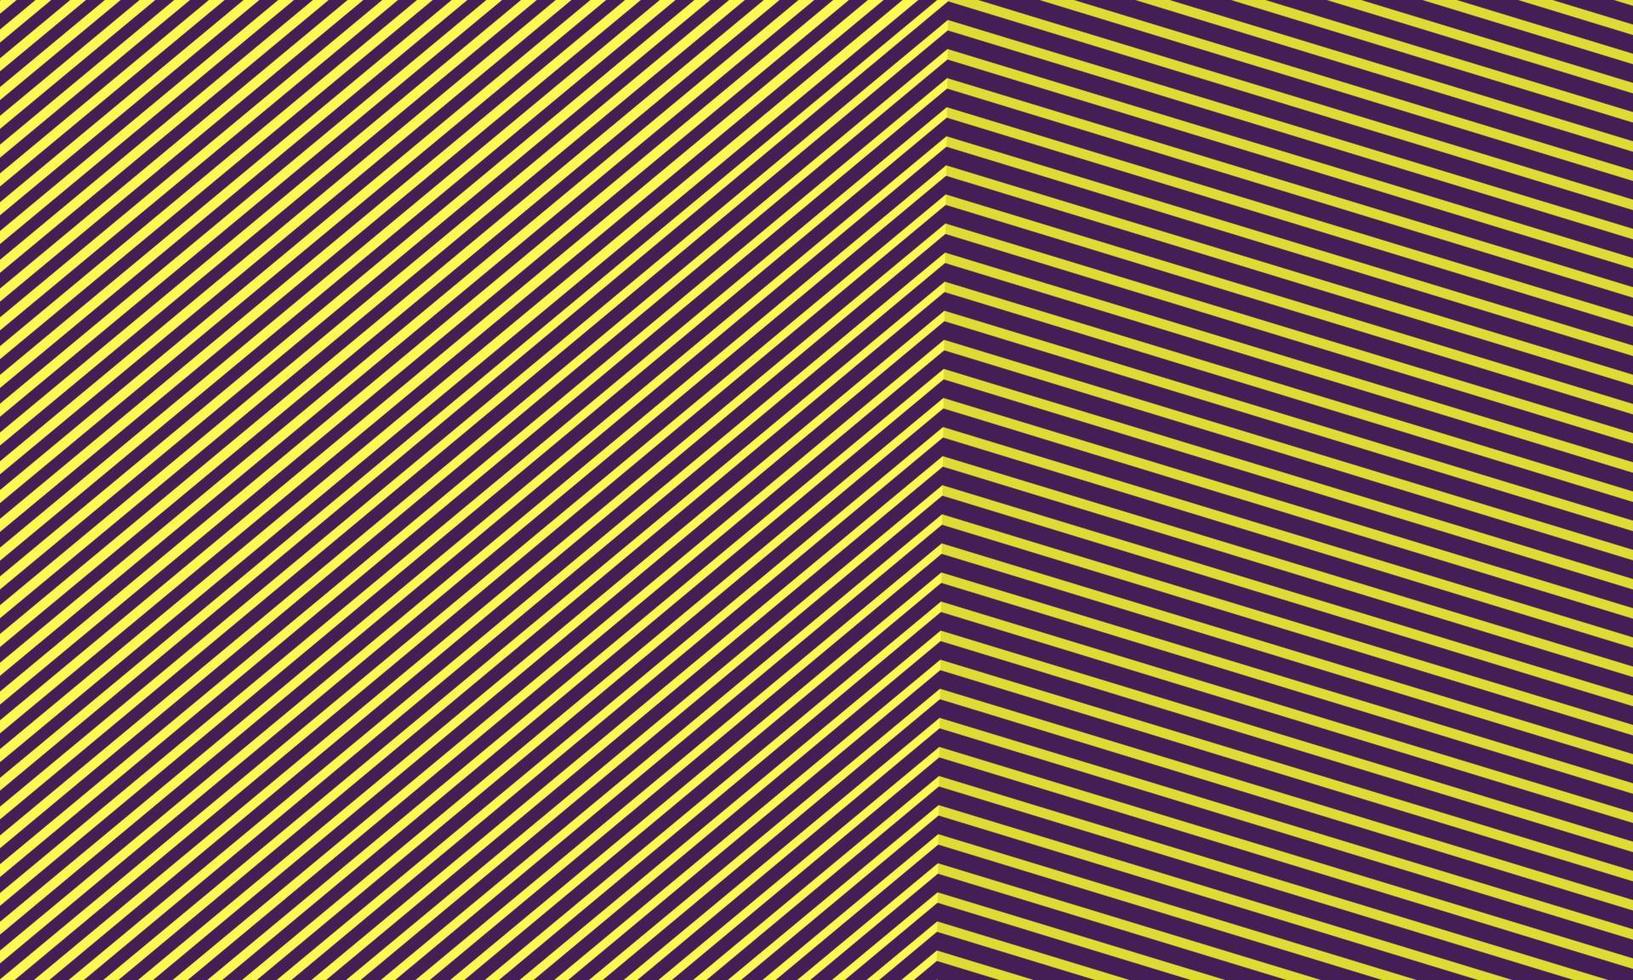 resumen de cerca la esquina de la caja de construcción de perspectiva geométrica a partir de un patrón de forma de líneas con un fondo moderno de color amarillo-púrpura, un concepto de arquitectura de moda mínimo y vibrante. vector